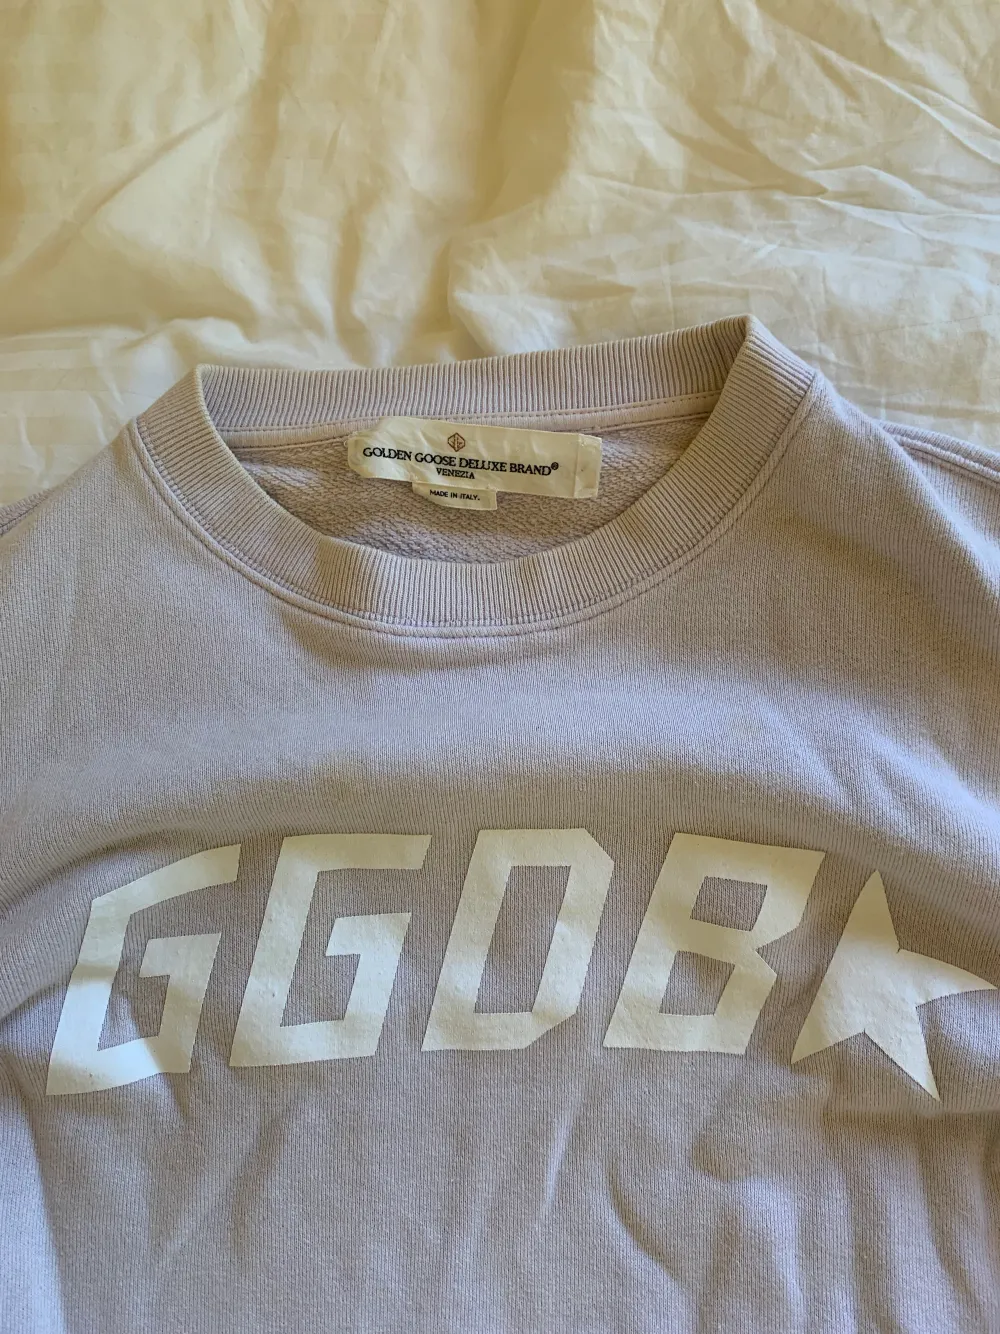 Snygg ljuslila sweatshirt från GGDB köpt på abcd i Göteborg. Det finns några småfläckar, men i övrigt är det inget fel på skicket trots att den använts ganska mycket. Jag säljer den för 350kr. Stickat.